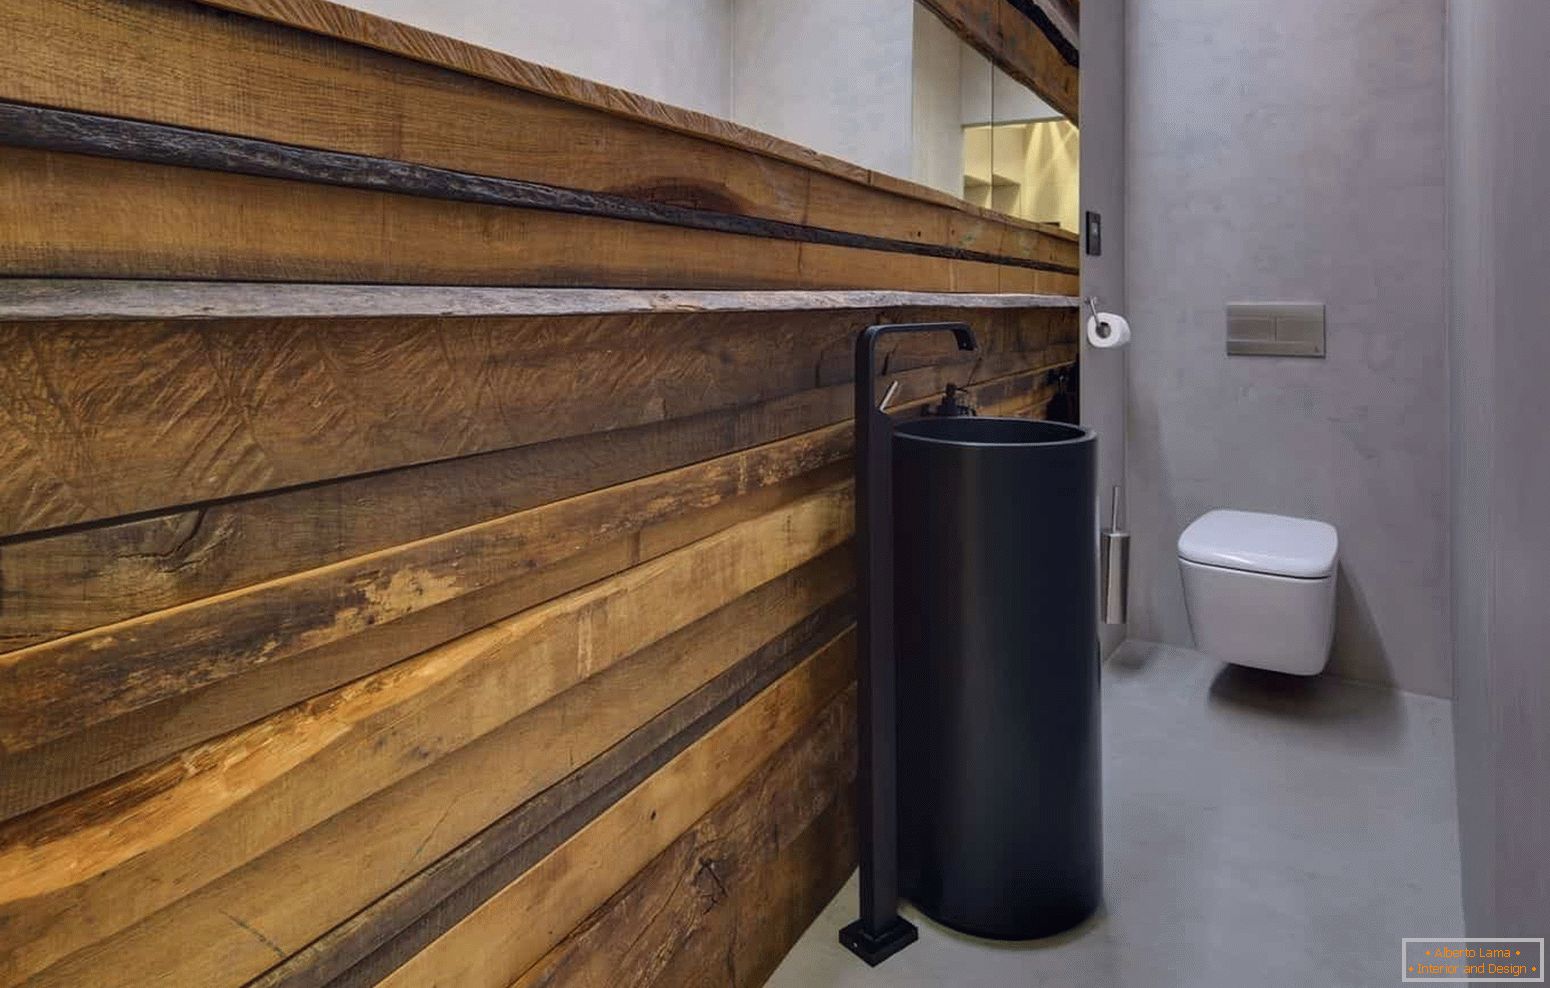 Modern kialakítása egy kis öltözős eco-stílusú WC-vel, szokatlan héjjal